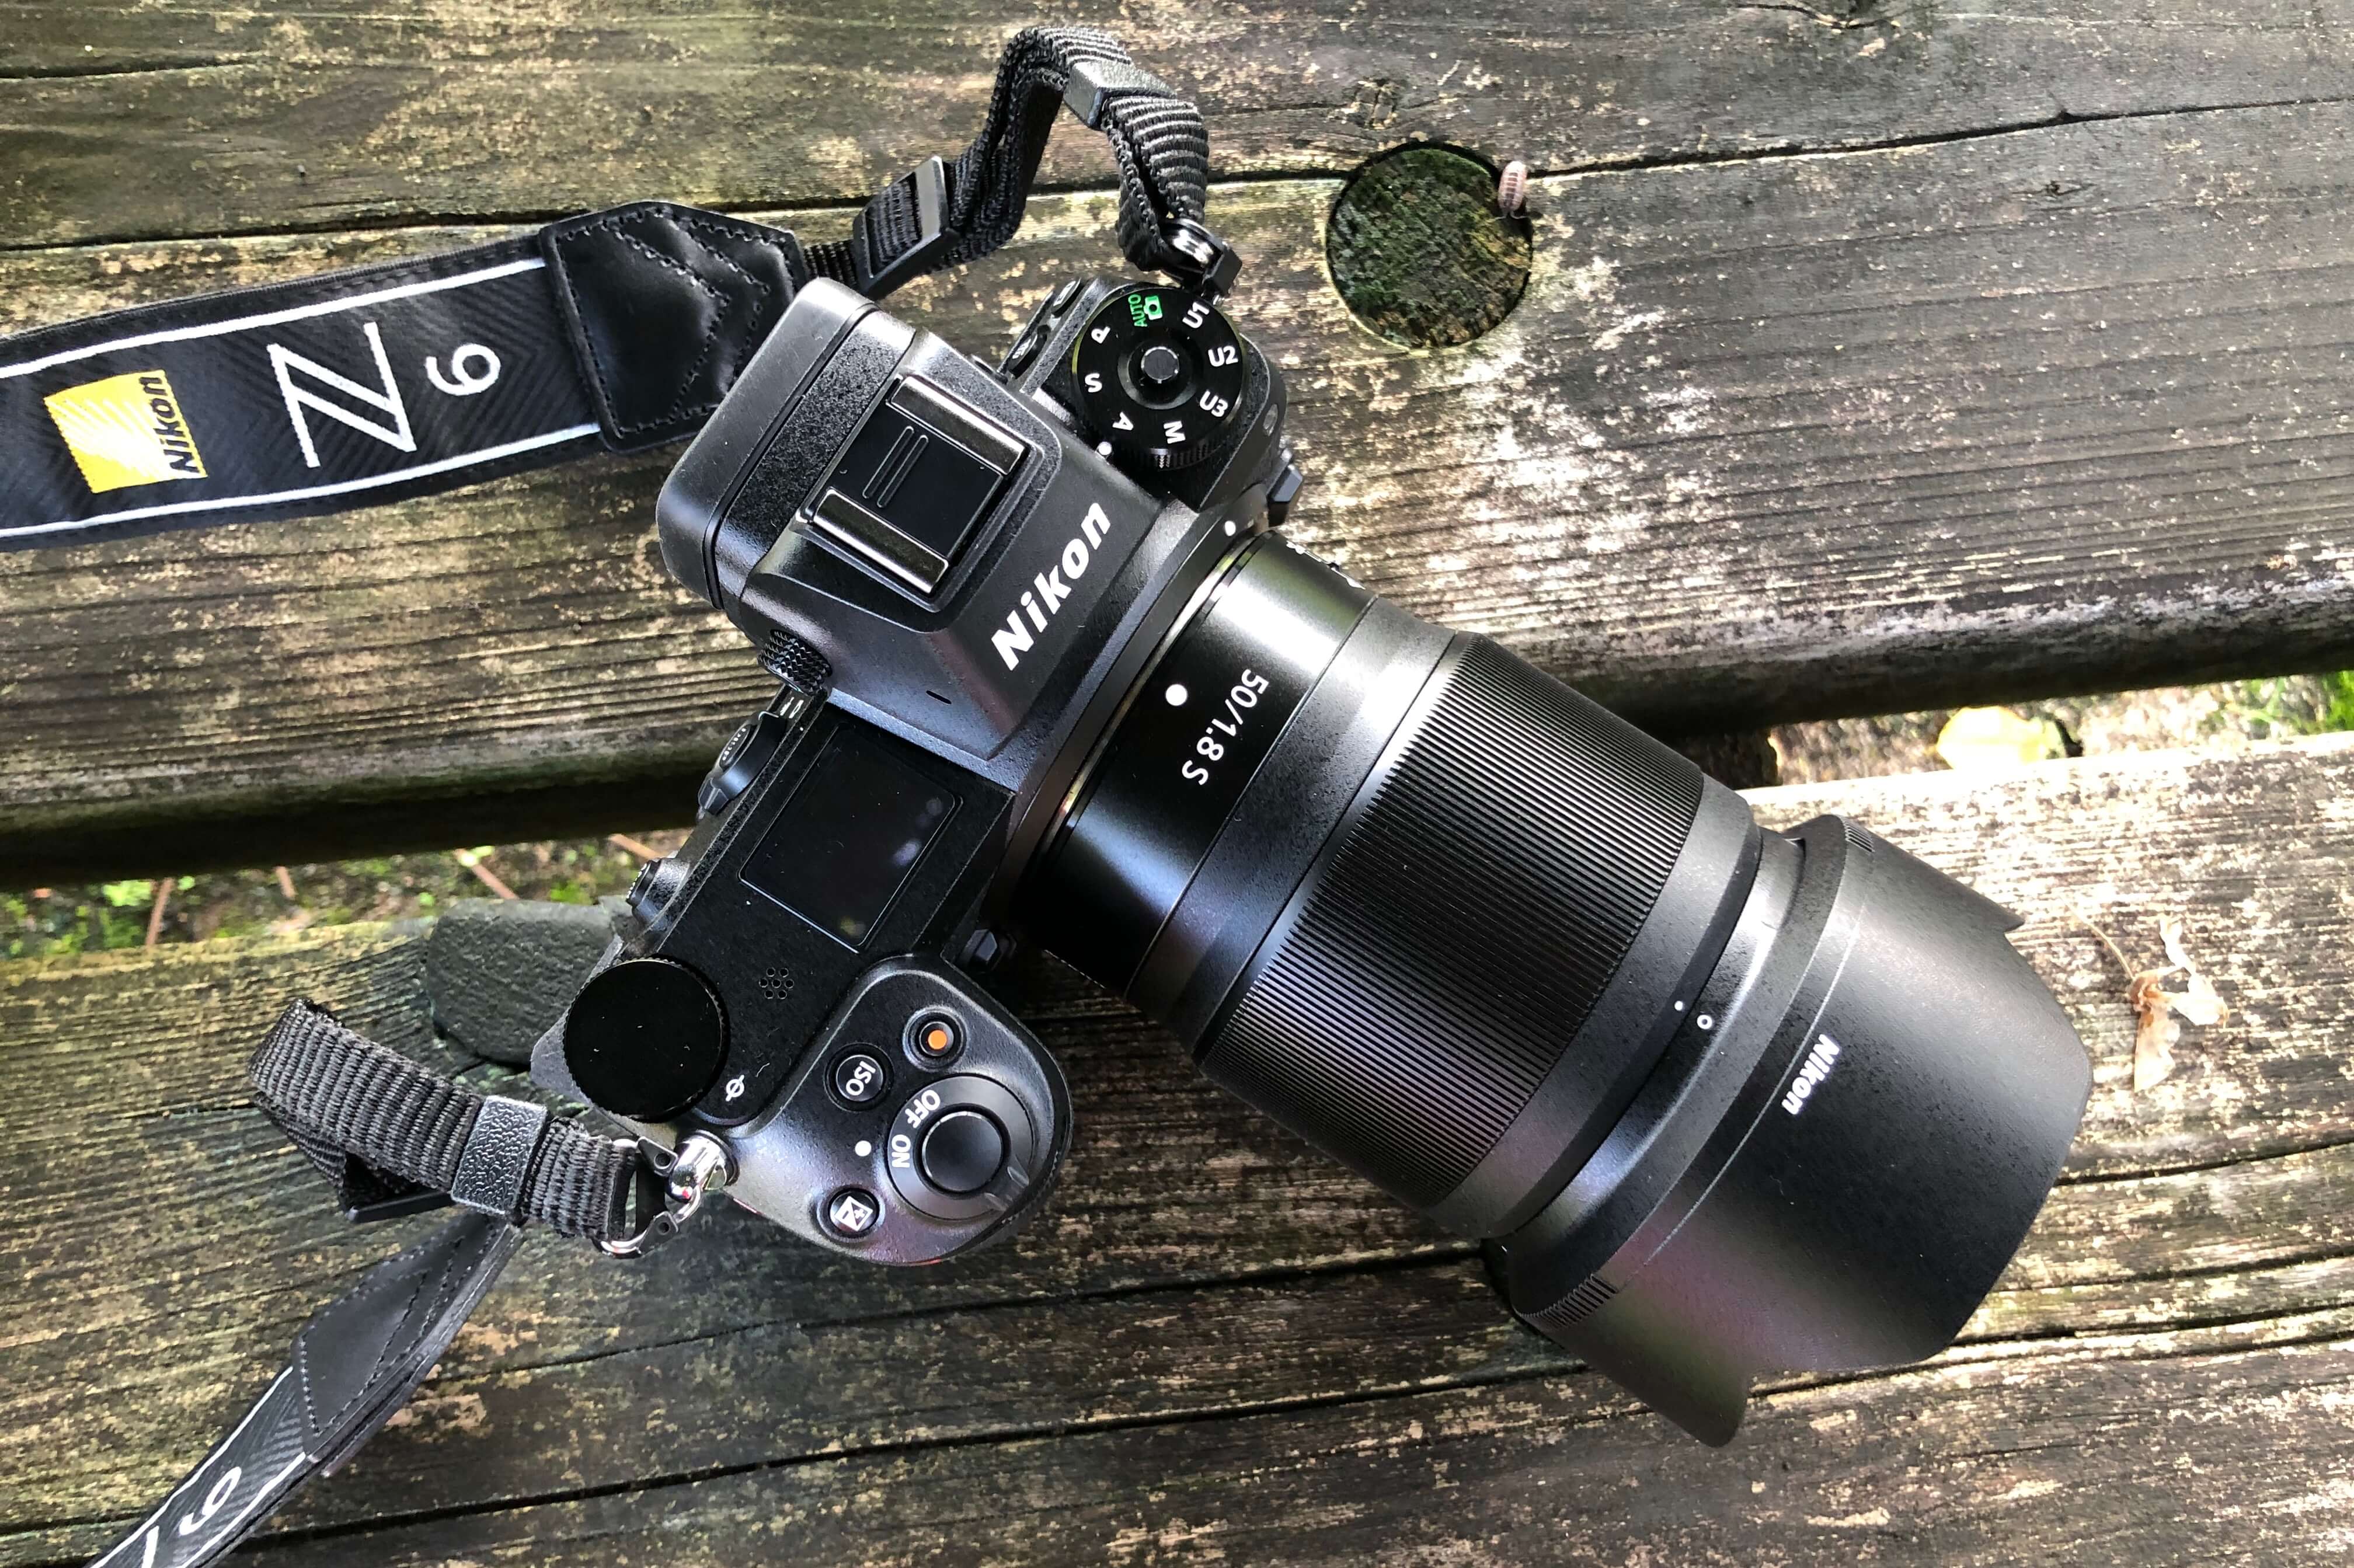 直売オーダー Nikon 単焦点レンズ 1.8S 50mm Z その他